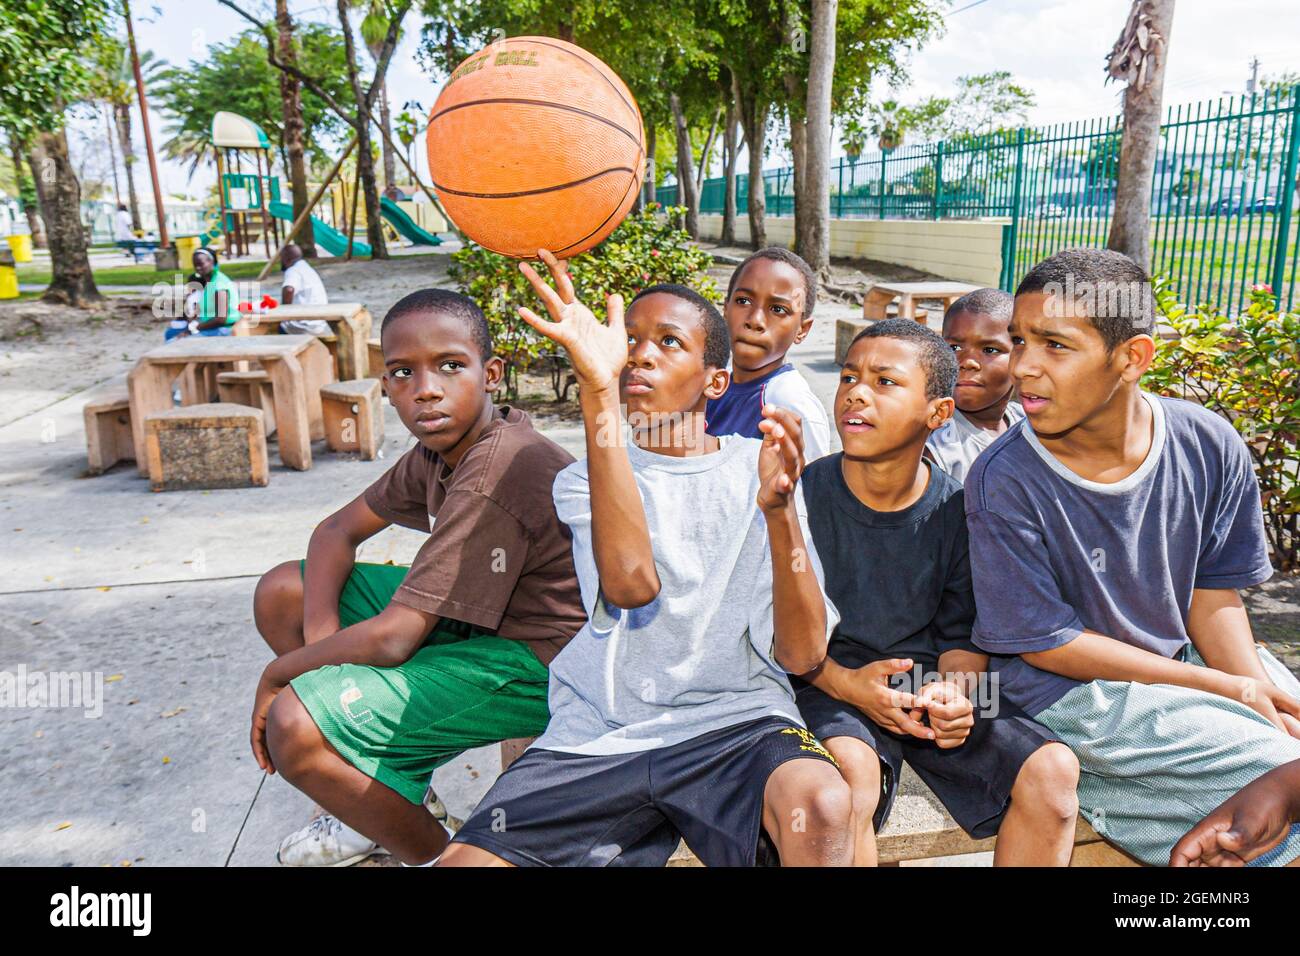 Miami Florida, Liberty City African Square Park Inner City, Black garçons hommes enfants enfants groupe amis terrain de jeu, montrant la rotation d'équilibre de basket-ball Banque D'Images